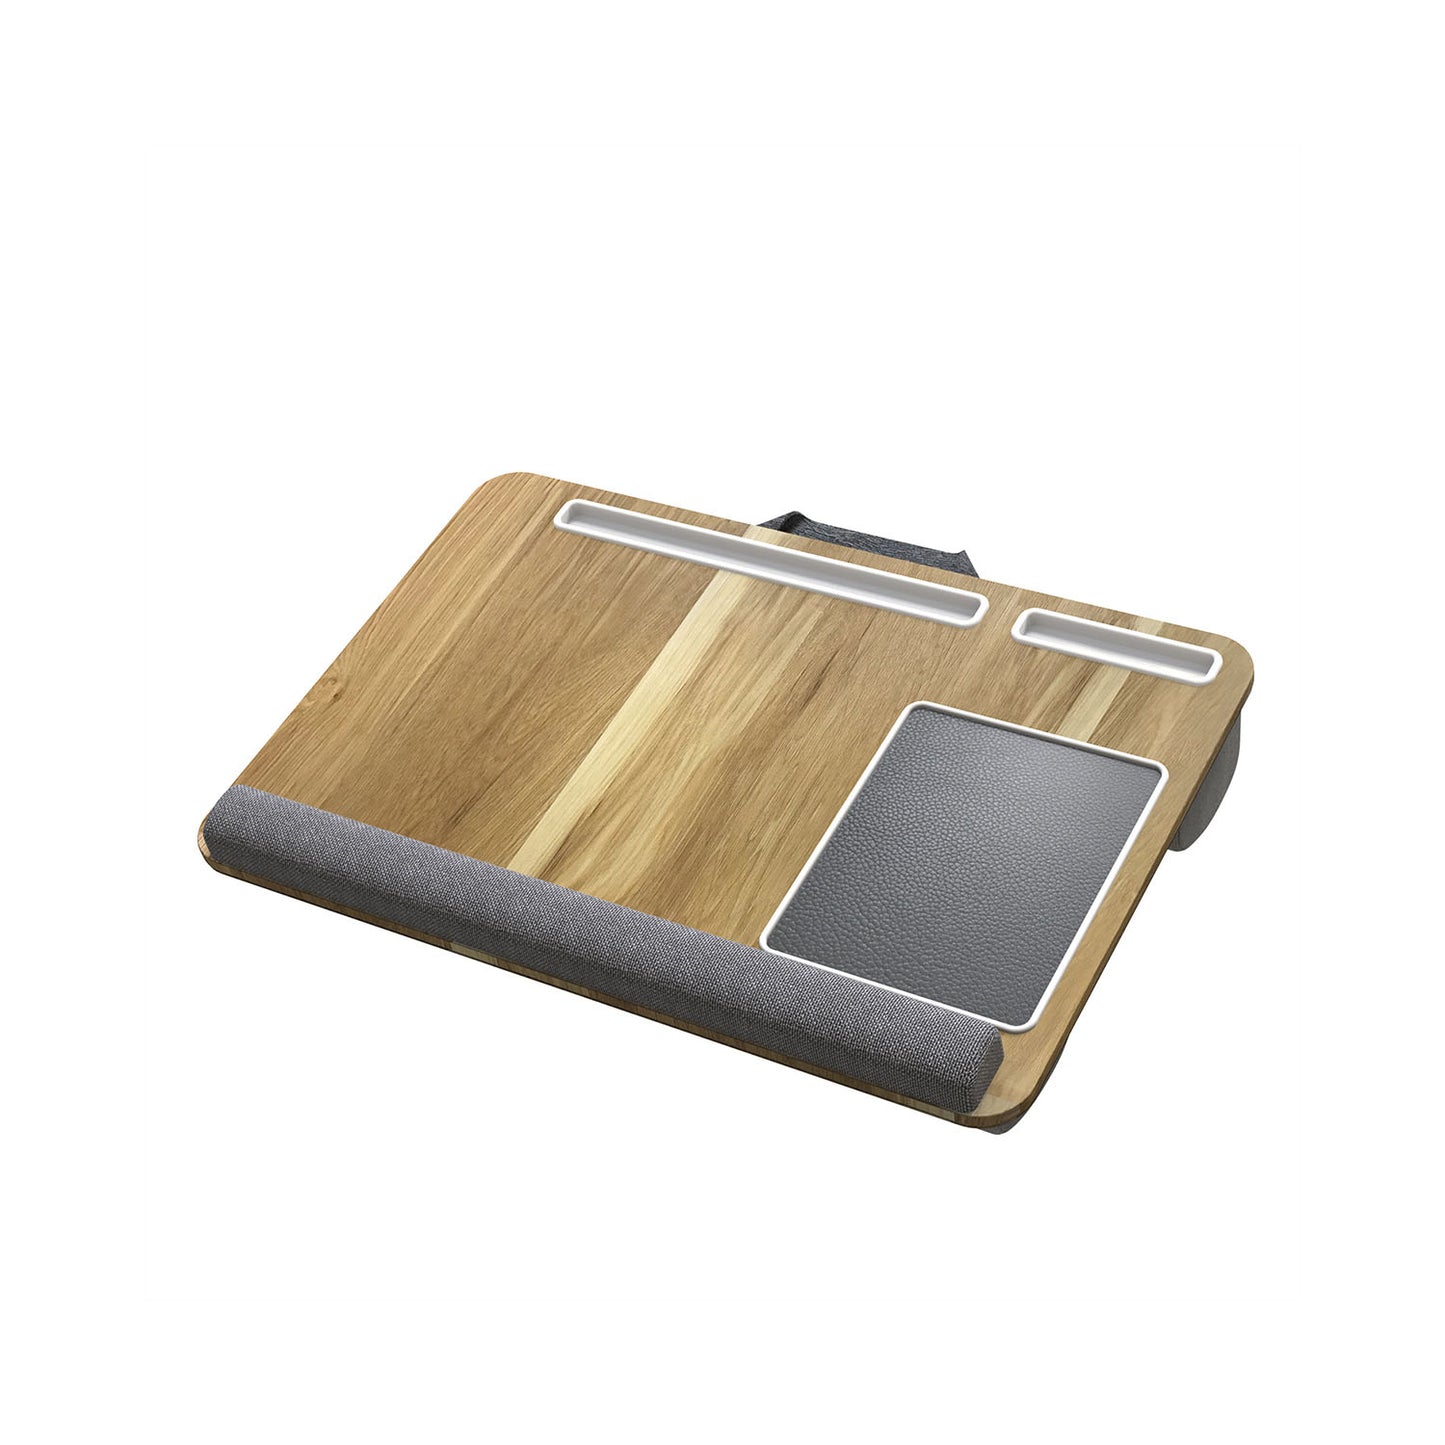 Lap Desk With Mouse Pad (Wood Grain)